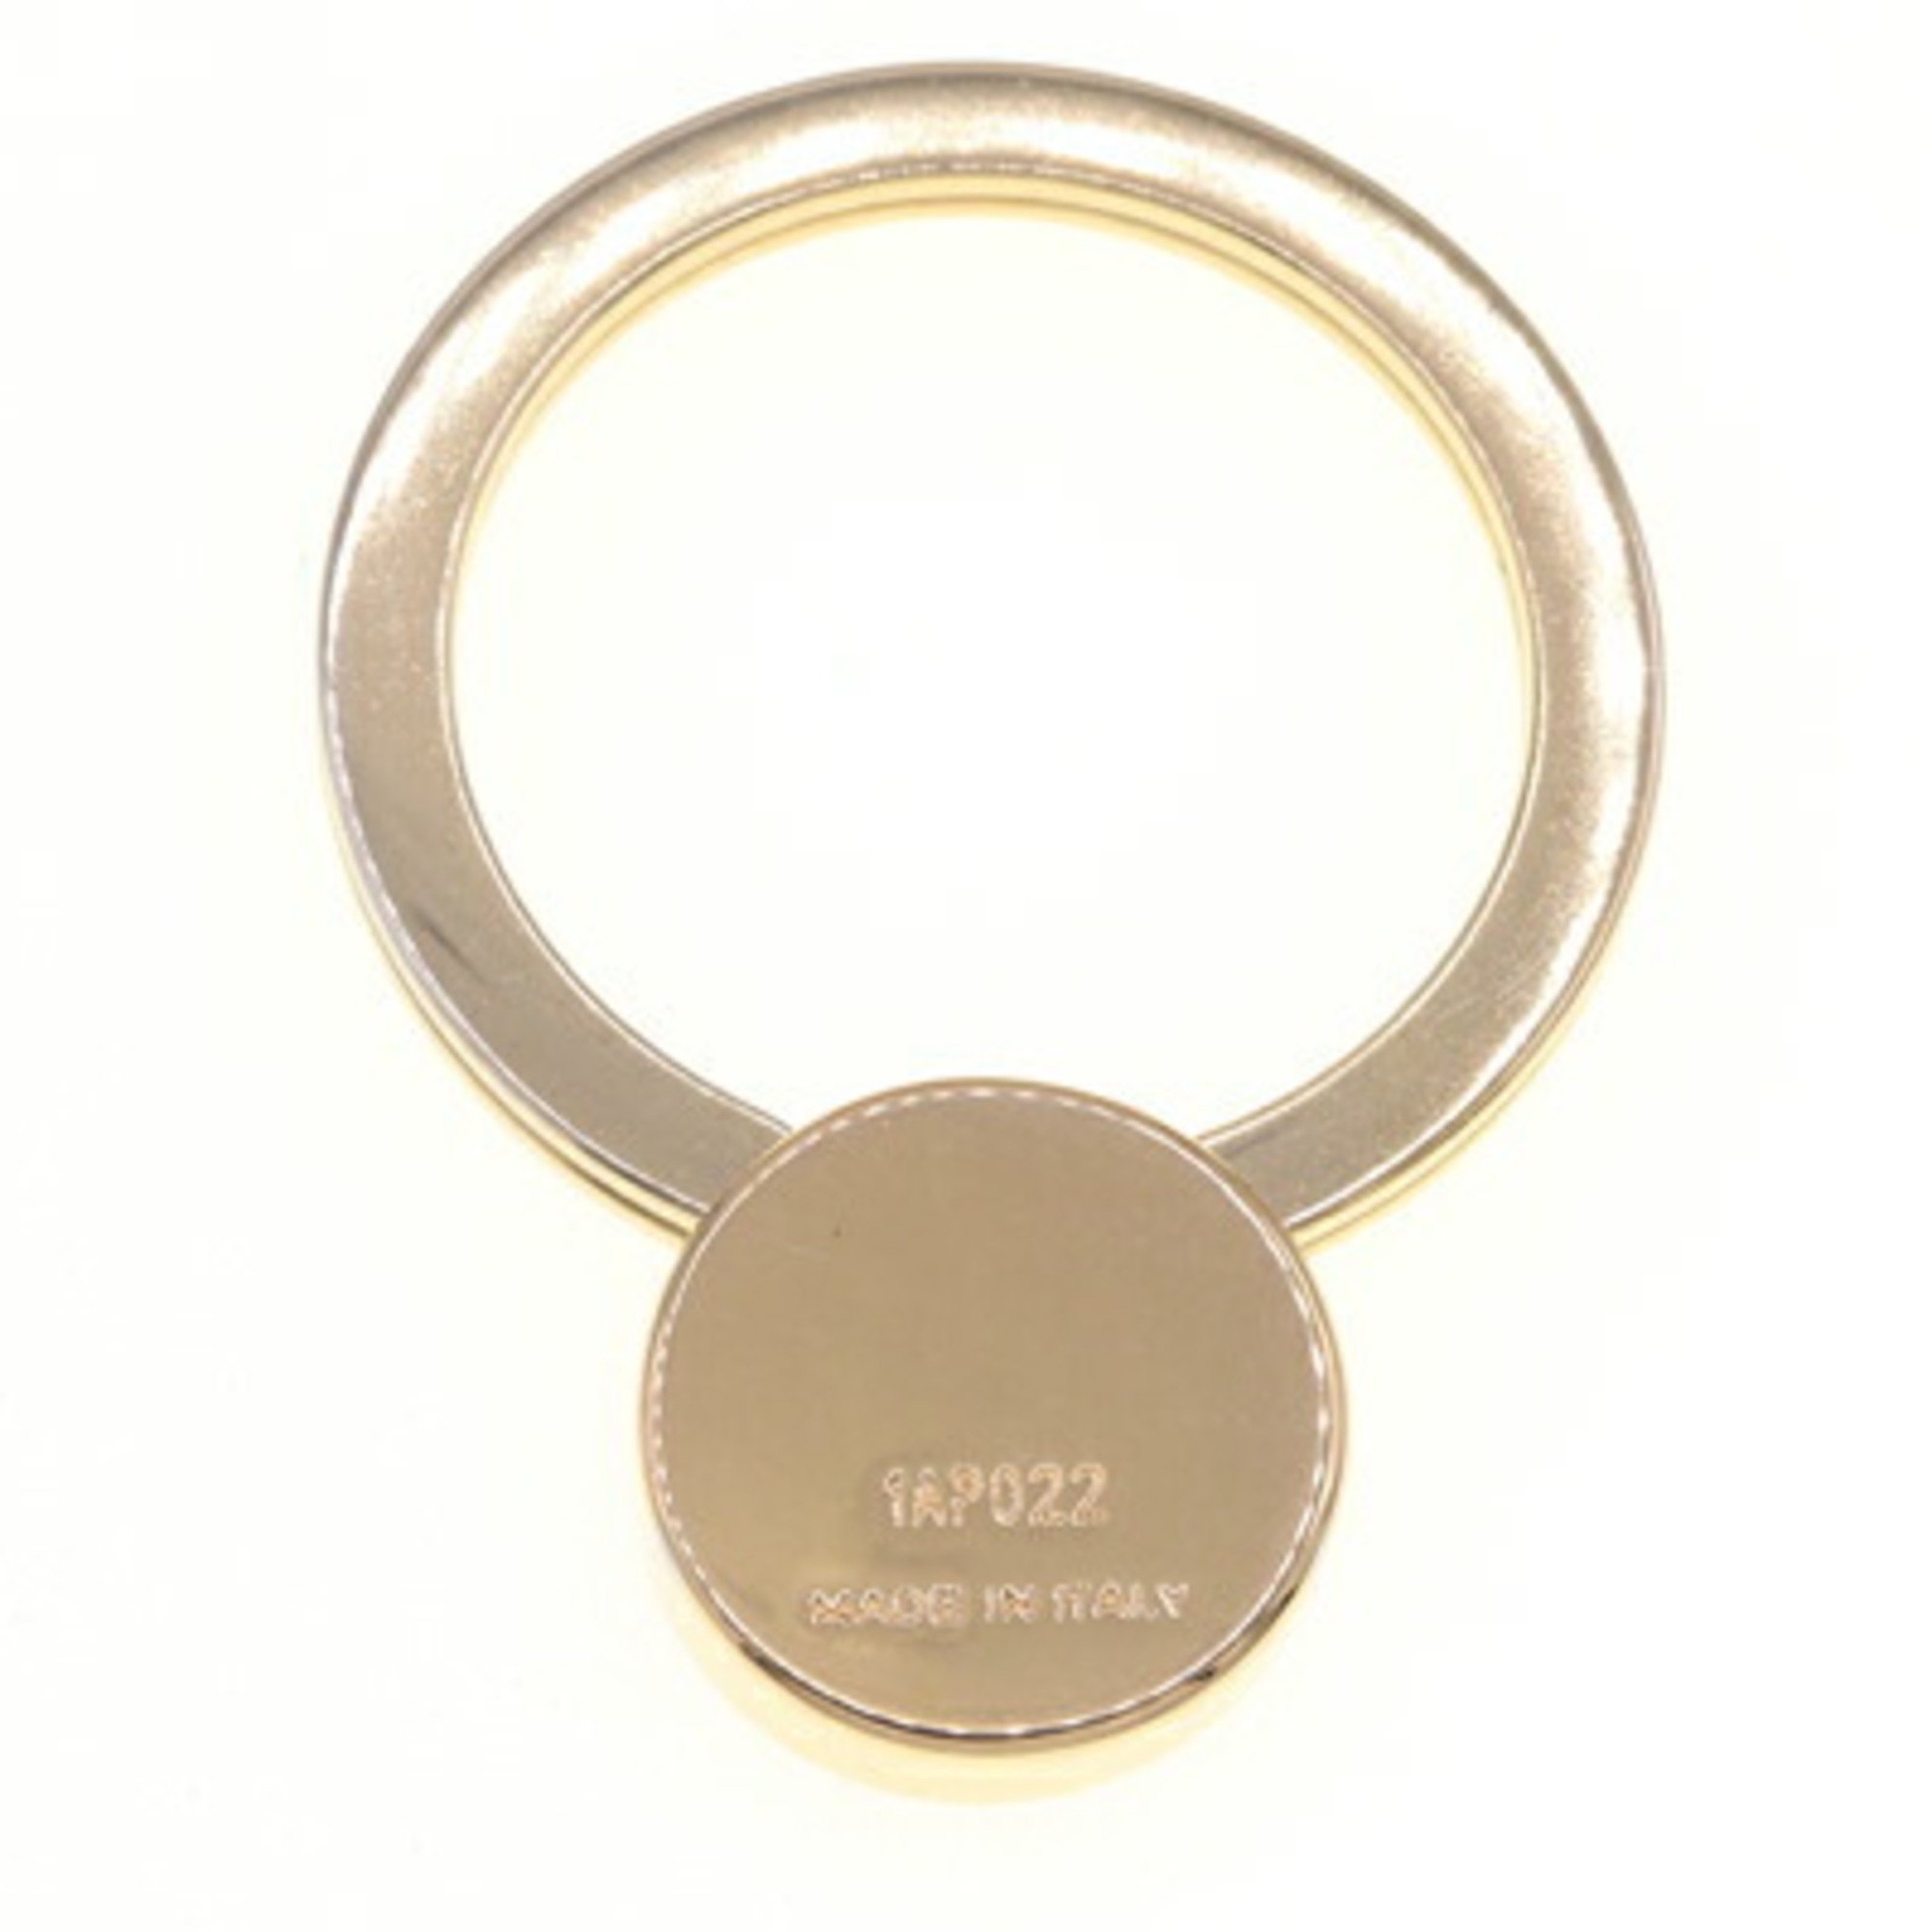 Prada Key Ring 1AP022 Gold Black Metal Holder Keys Women Men PRADA